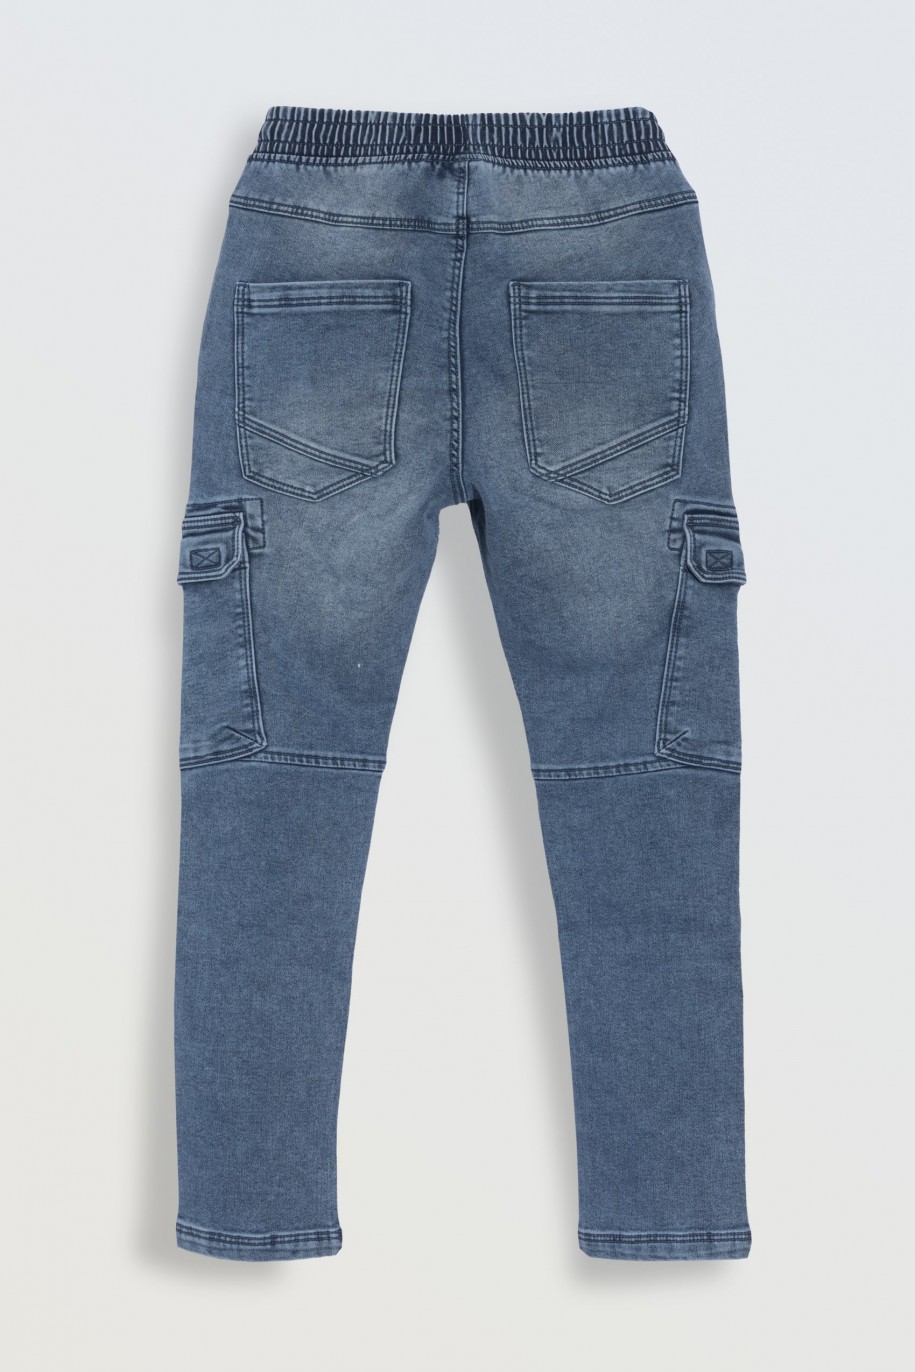 Niebieskie jeansowe spodnie typu cargo z przestrzennymi kieszeniami - 46467